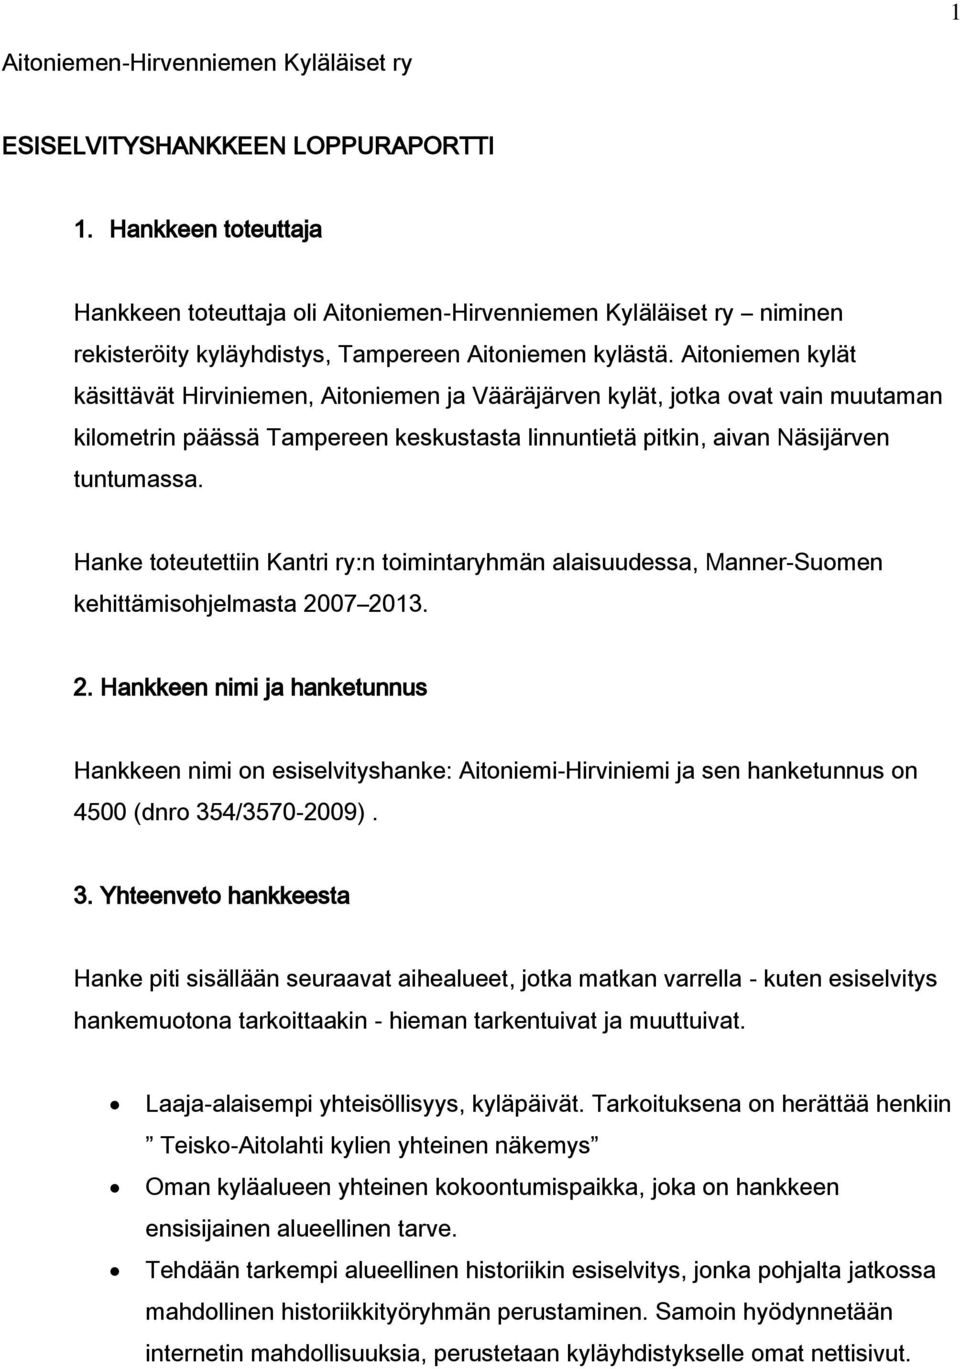 Aitoniemen kylät käsittävät Hirviniemen, Aitoniemen ja Vääräjärven kylät, jotka ovat vain muutaman kilometrin päässä Tampereen keskustasta linnuntietä pitkin, aivan Näsijärven tuntumassa.